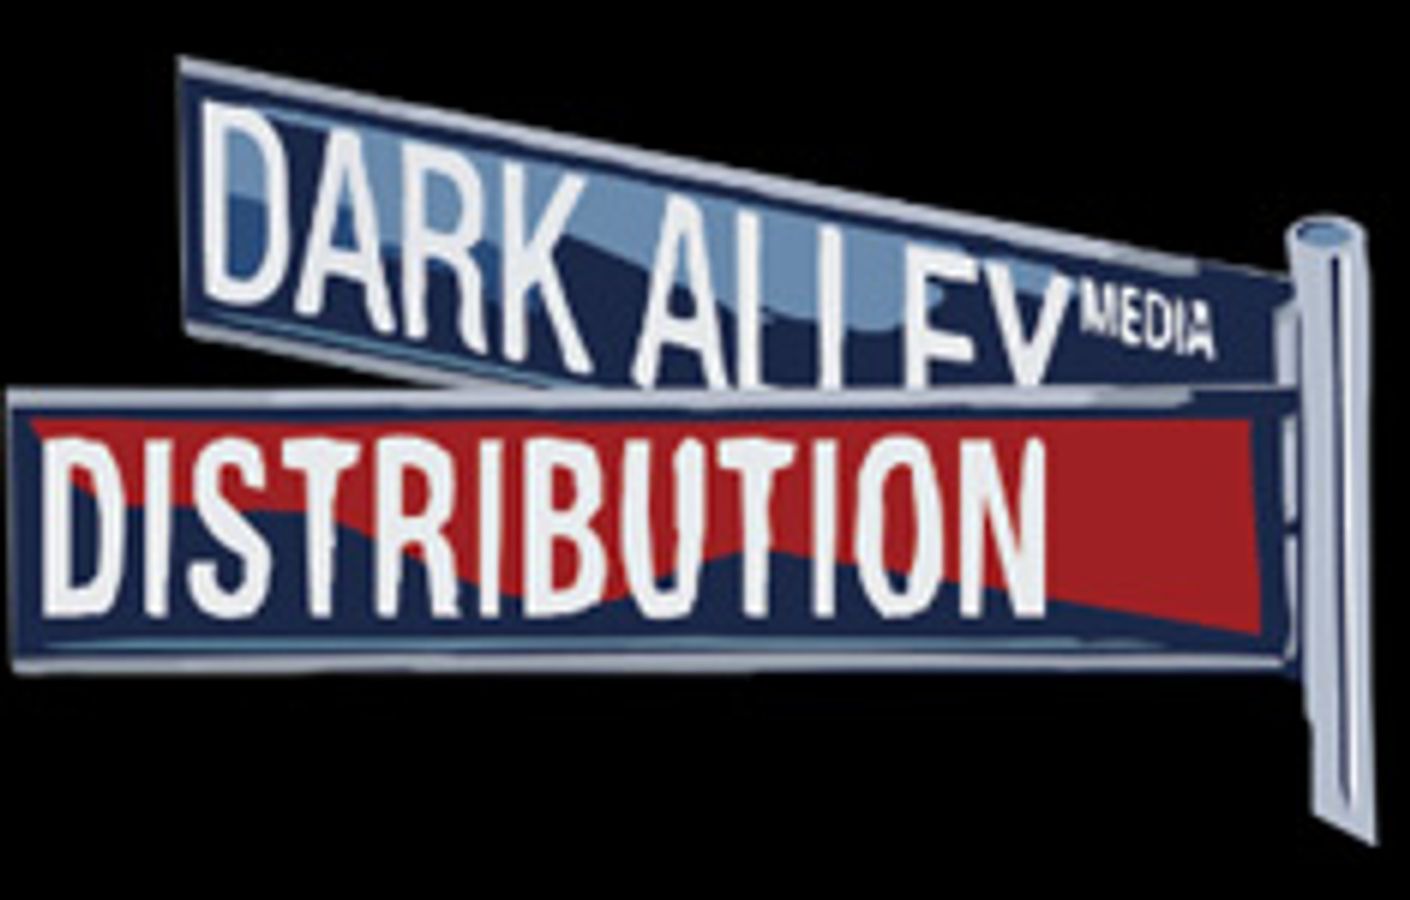 Dark Alley Distribution